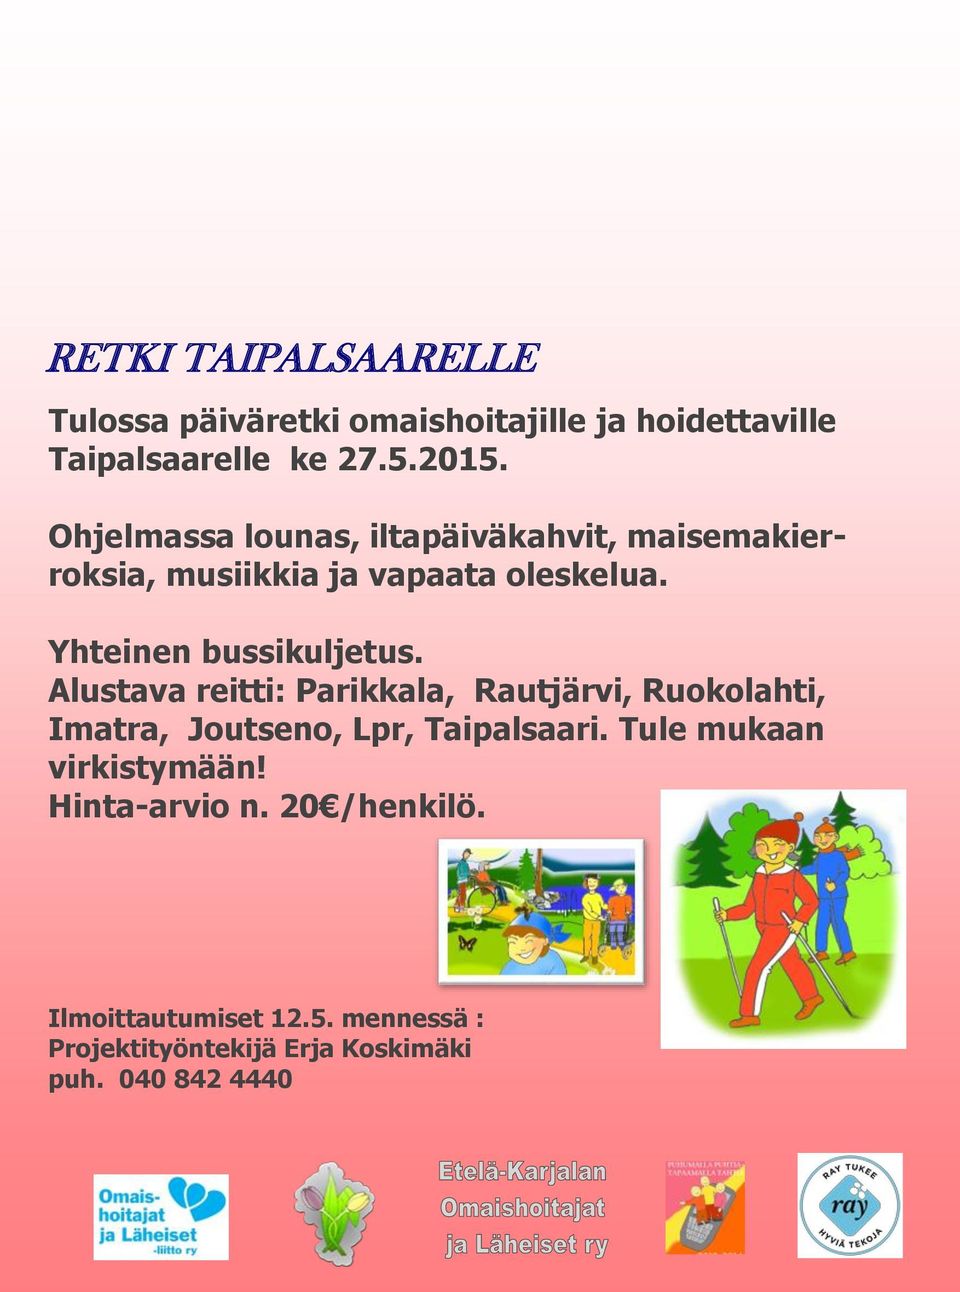 Alustava reitti: Parikkala, Rautjärvi, Ruokolahti, Imatra, Joutseno, Lpr, Taipalsaari.